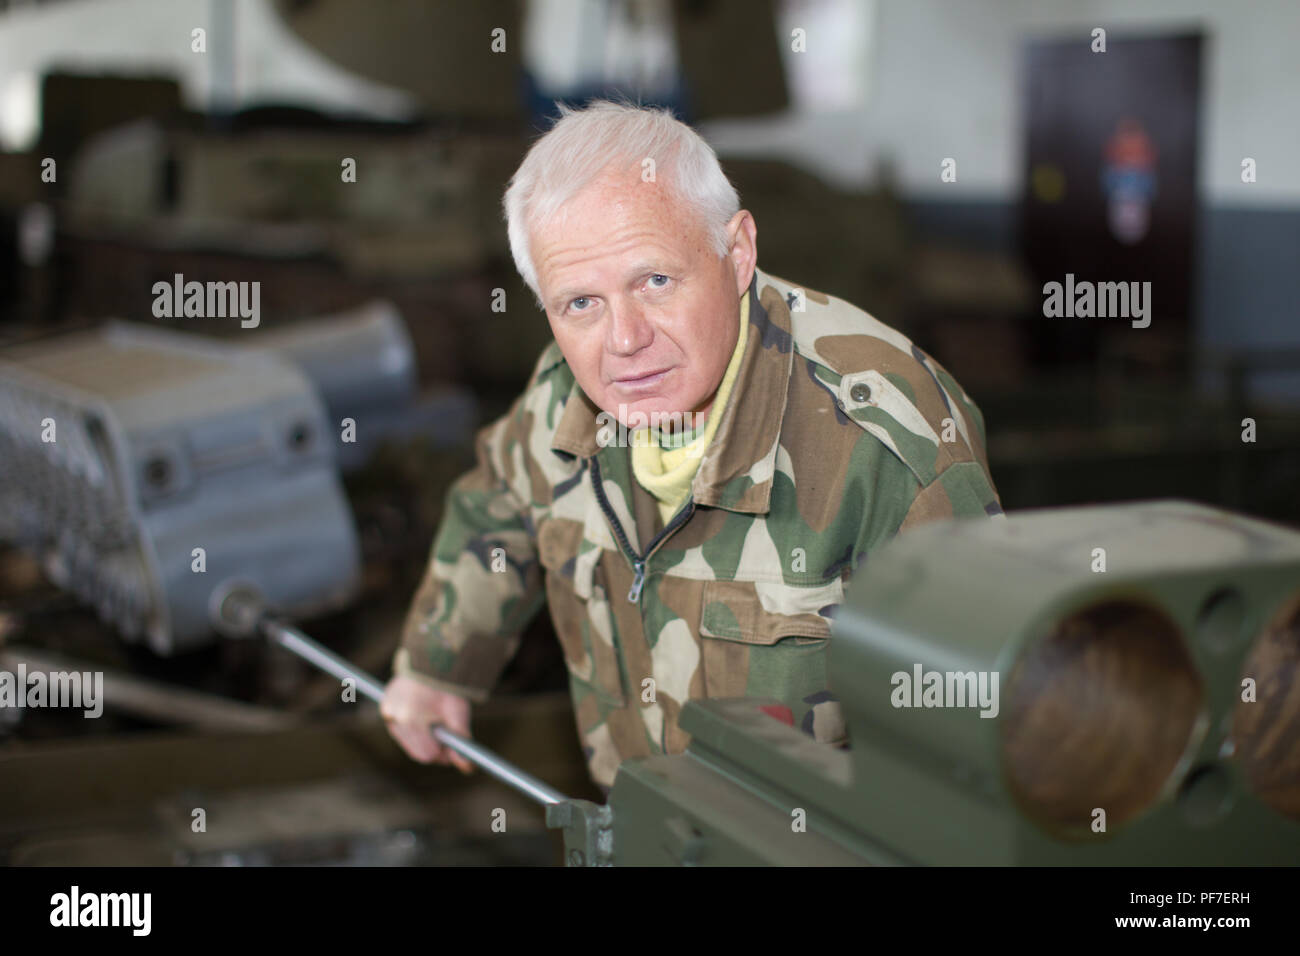 Belarus, Gomel, April 27, 2018. Military factory.Military worker repairing tanks Stock Photo